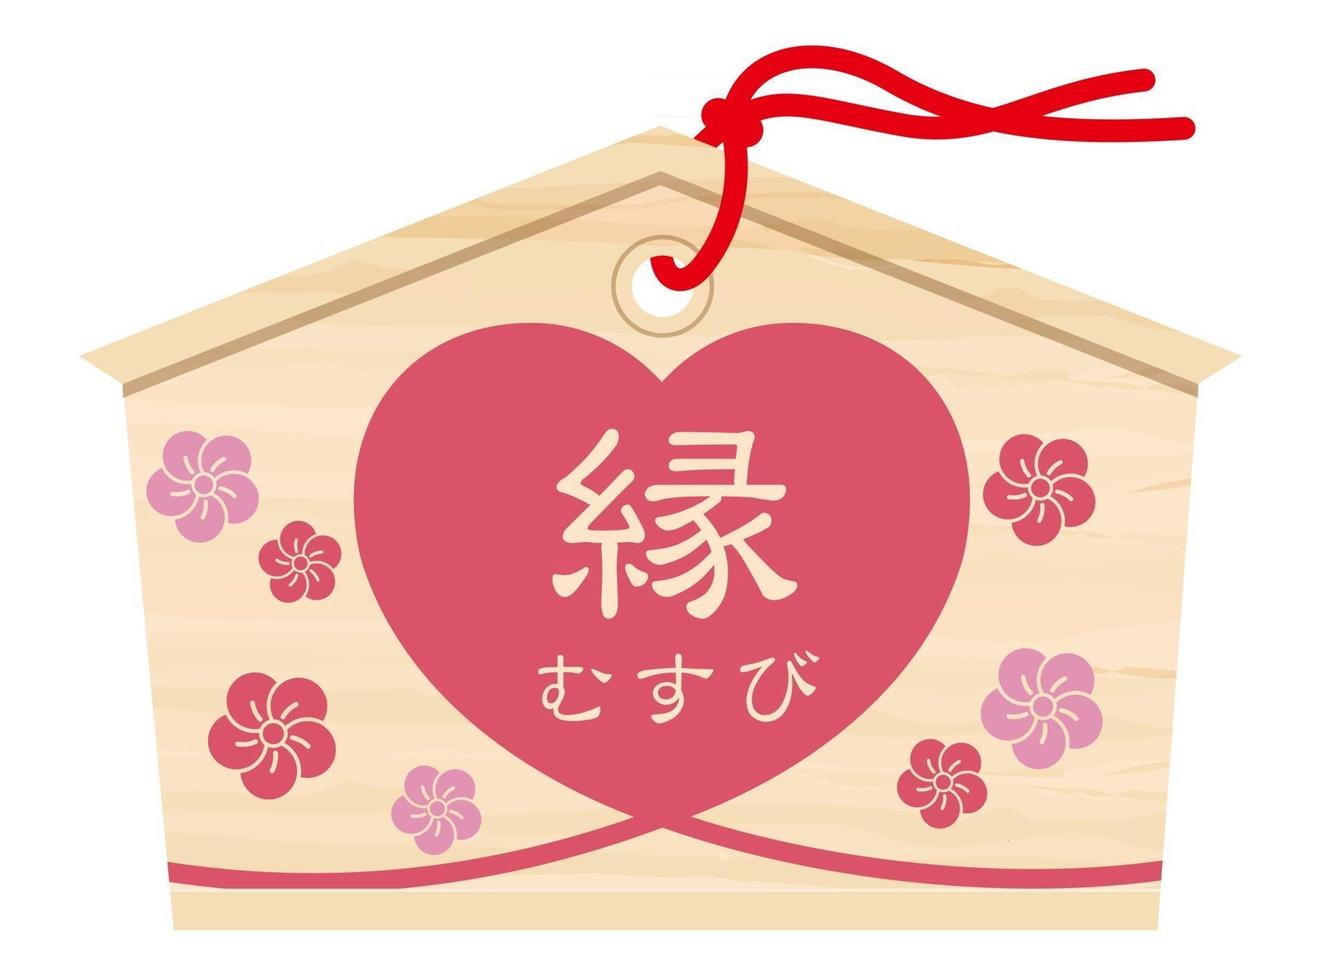 japanische votivtafel mit kanji-bürstenkalligraphie, die sich eine bessere ehebindung und eine herzform wünscht. vektor